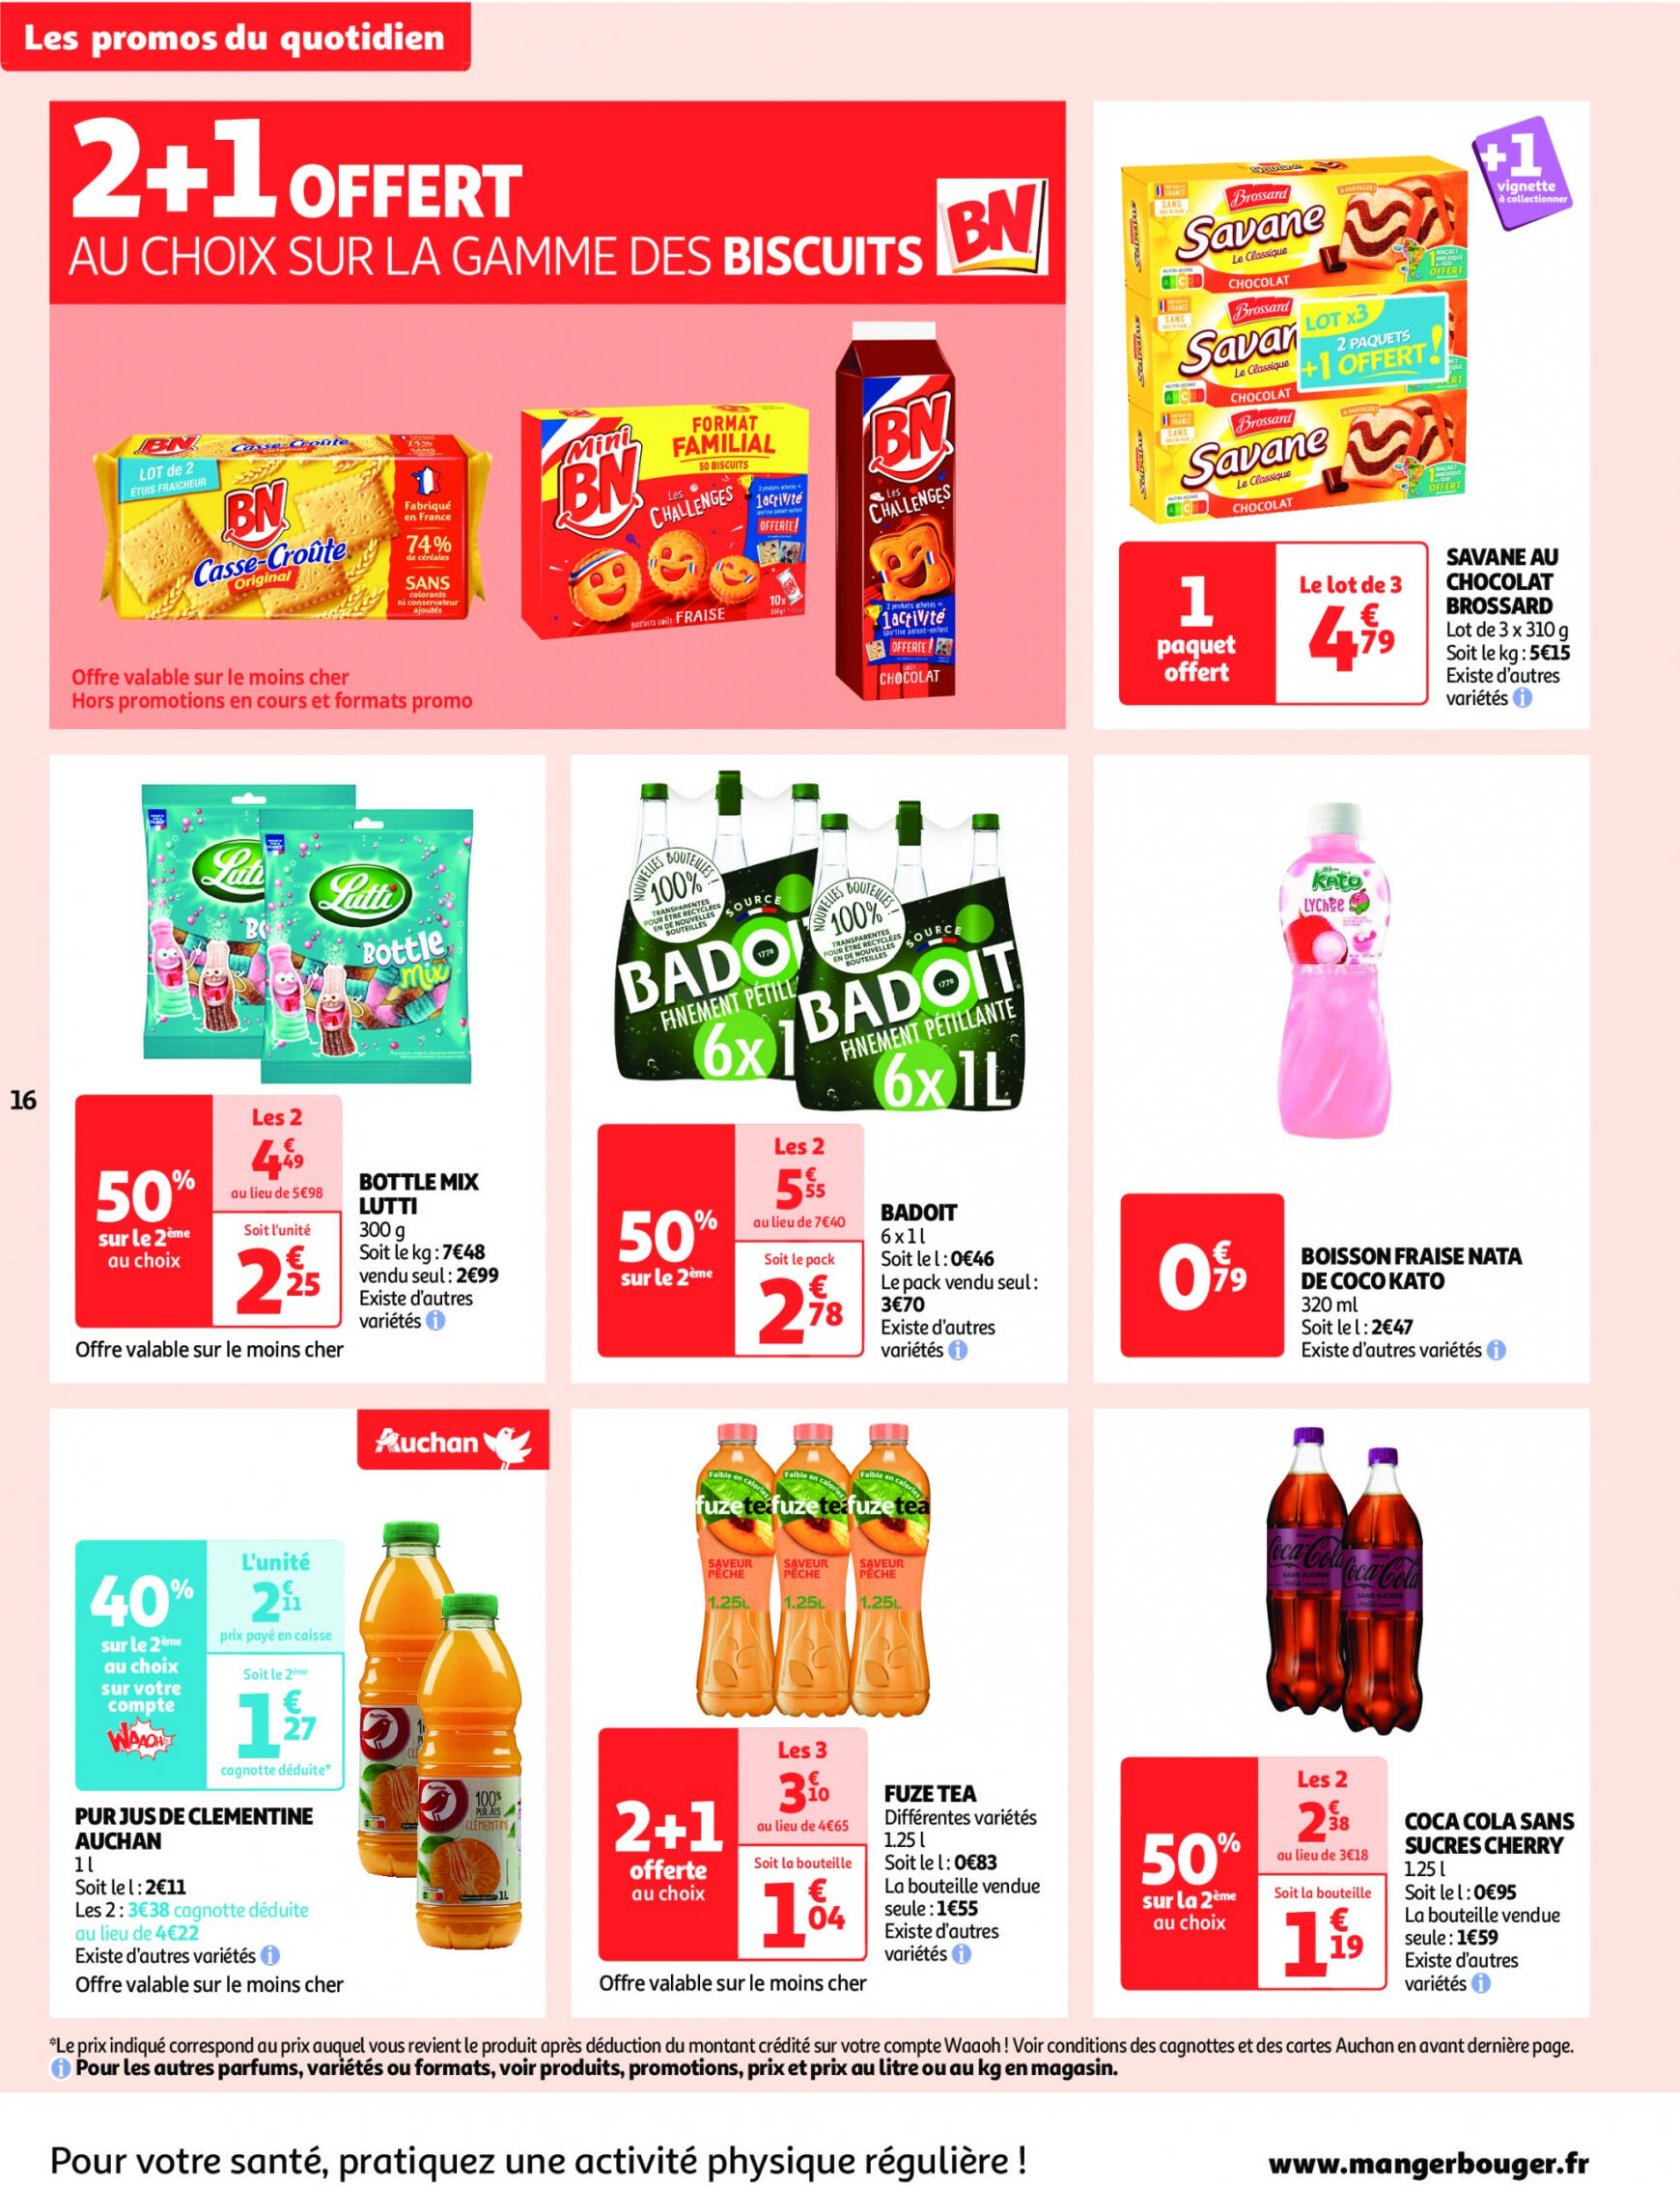 auchan - Auchan - On met le turbot sur les produits de la mer folder huidig 14.05. - 19.05. - page: 16